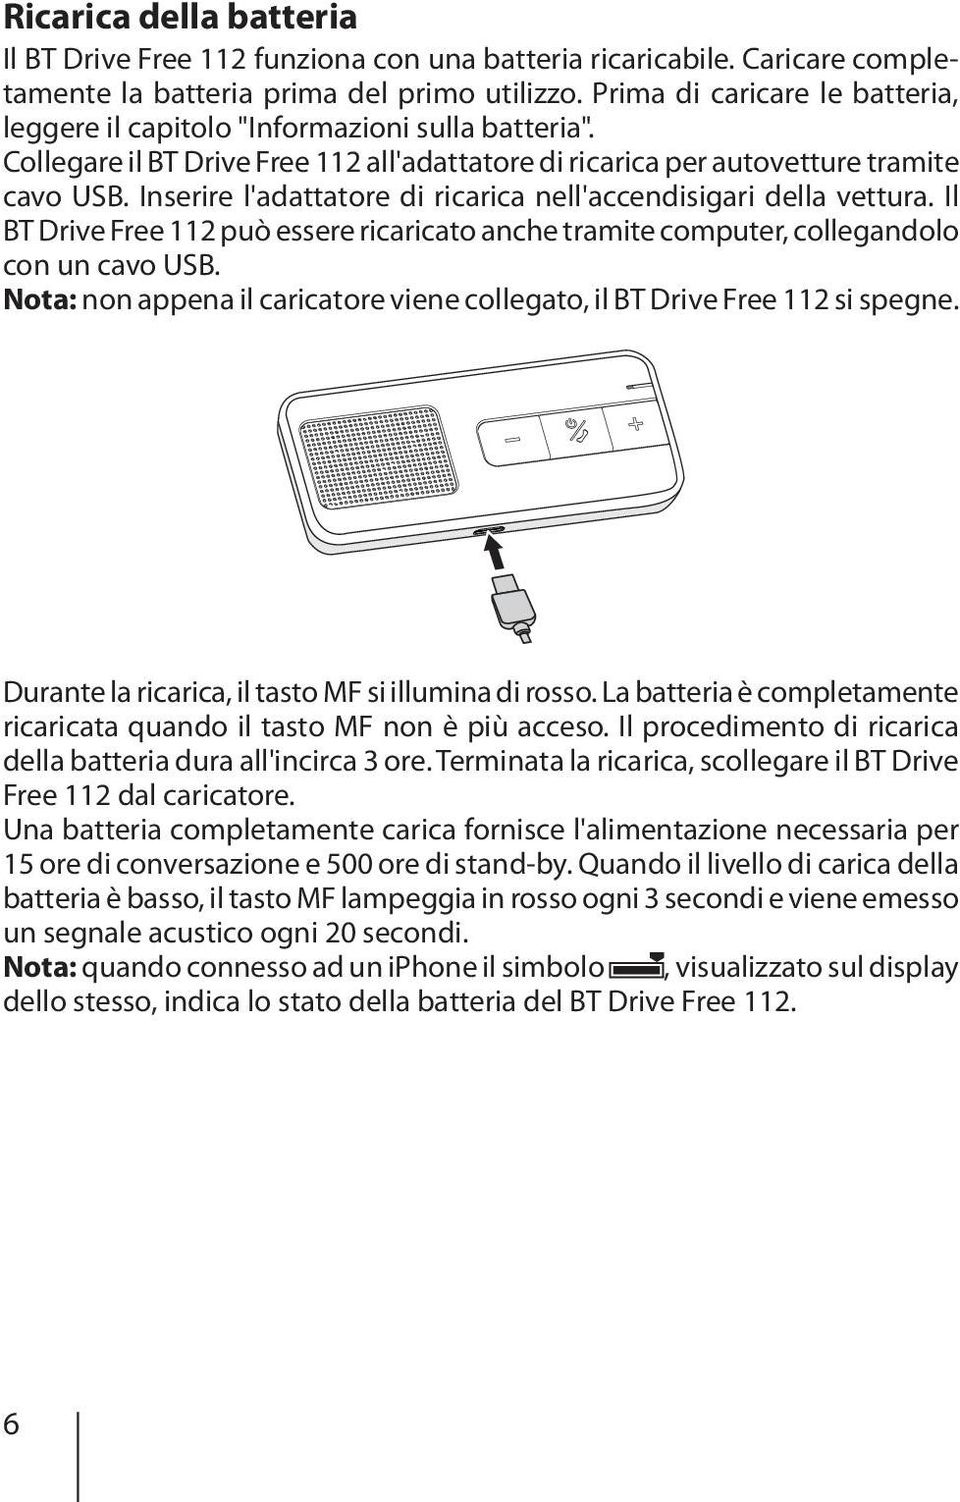 Inserire l'adattatore di ricarica nell'accendisigari della vettura. Il BT Drive Free 112 può essere ricaricato anche tramite computer, collegandolo con un cavo USB.